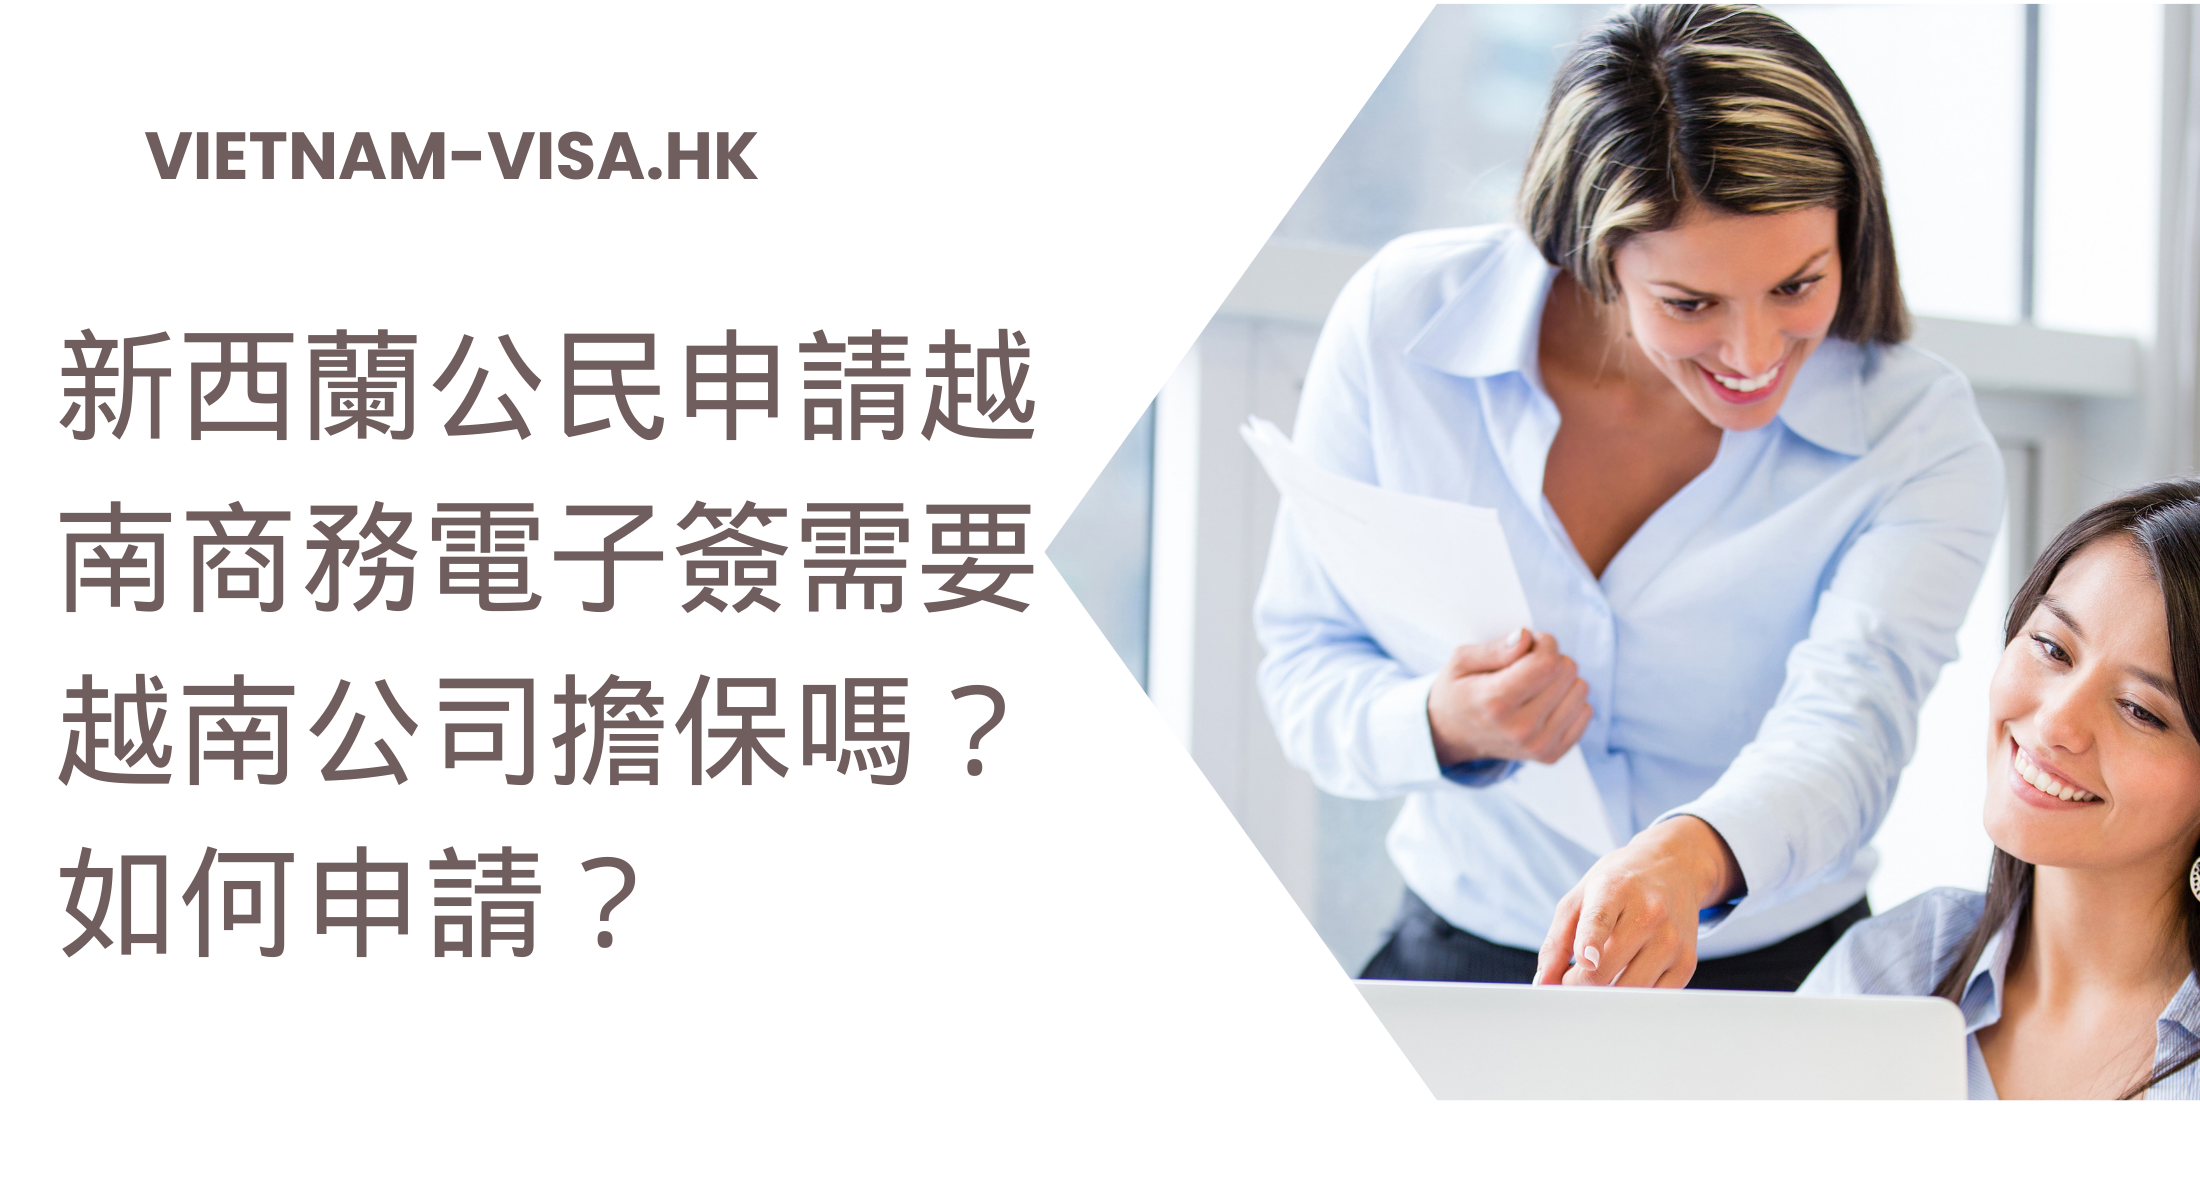 新西蘭公民申請越南商務電子簽需要越南公司擔保嗎？ 如何申請？